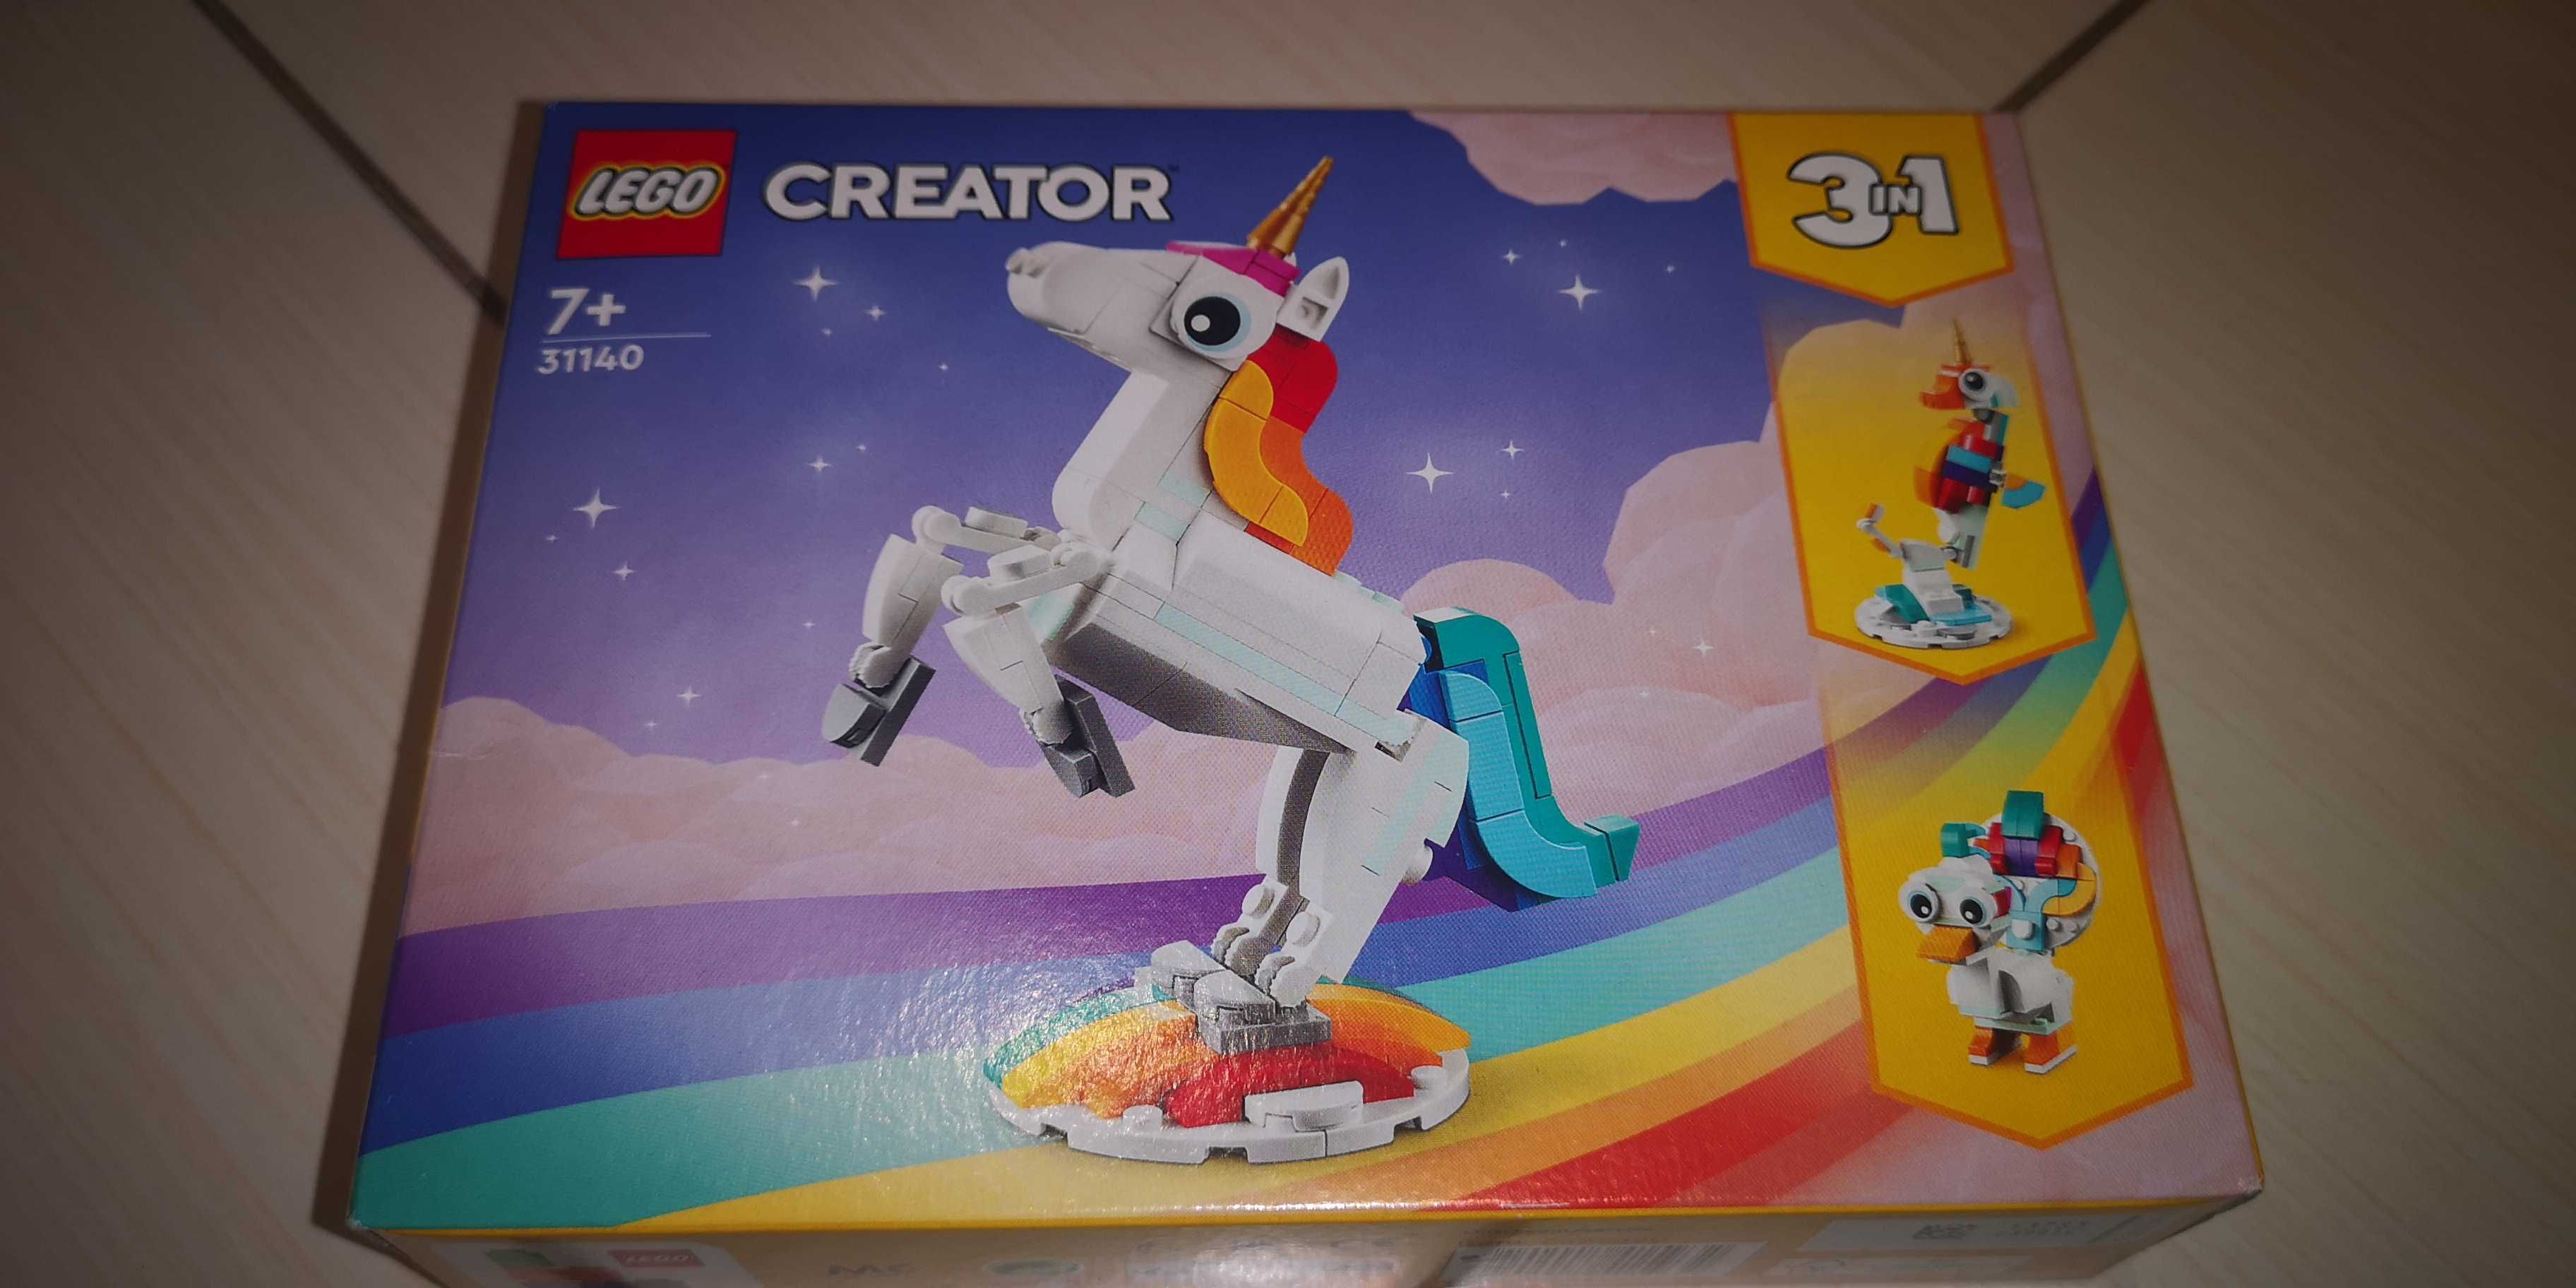 Lego creator 3w1 31140